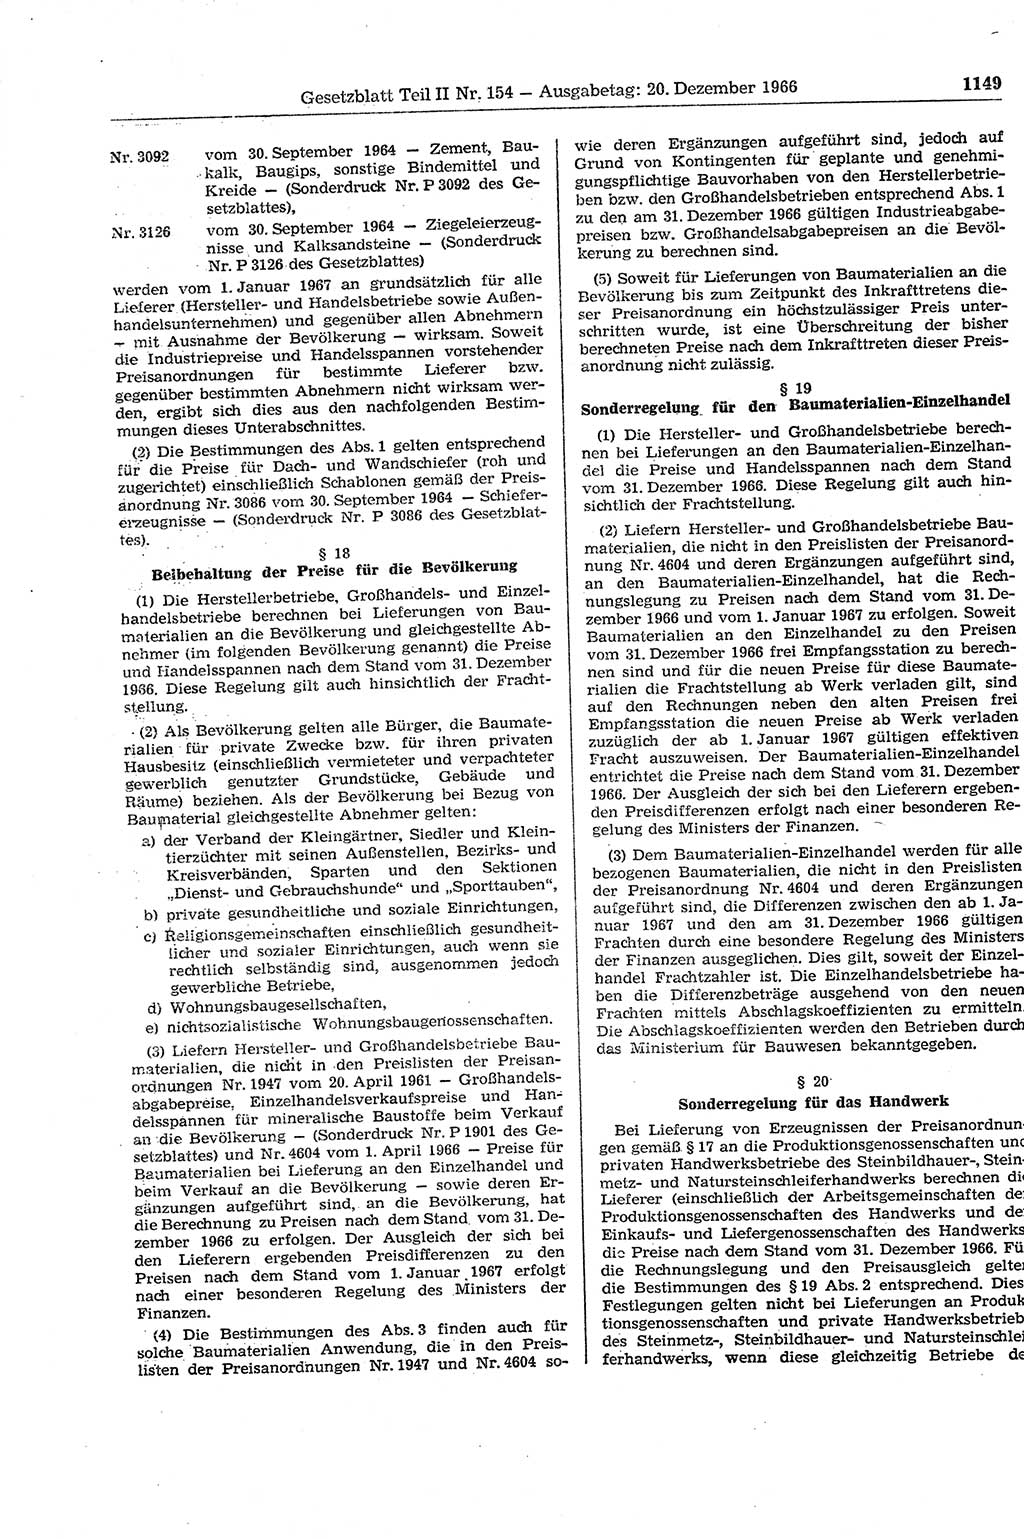 Gesetzblatt (GBl.) der Deutschen Demokratischen Republik (DDR) Teil ⅠⅠ 1966, Seite 1149 (GBl. DDR ⅠⅠ 1966, S. 1149)